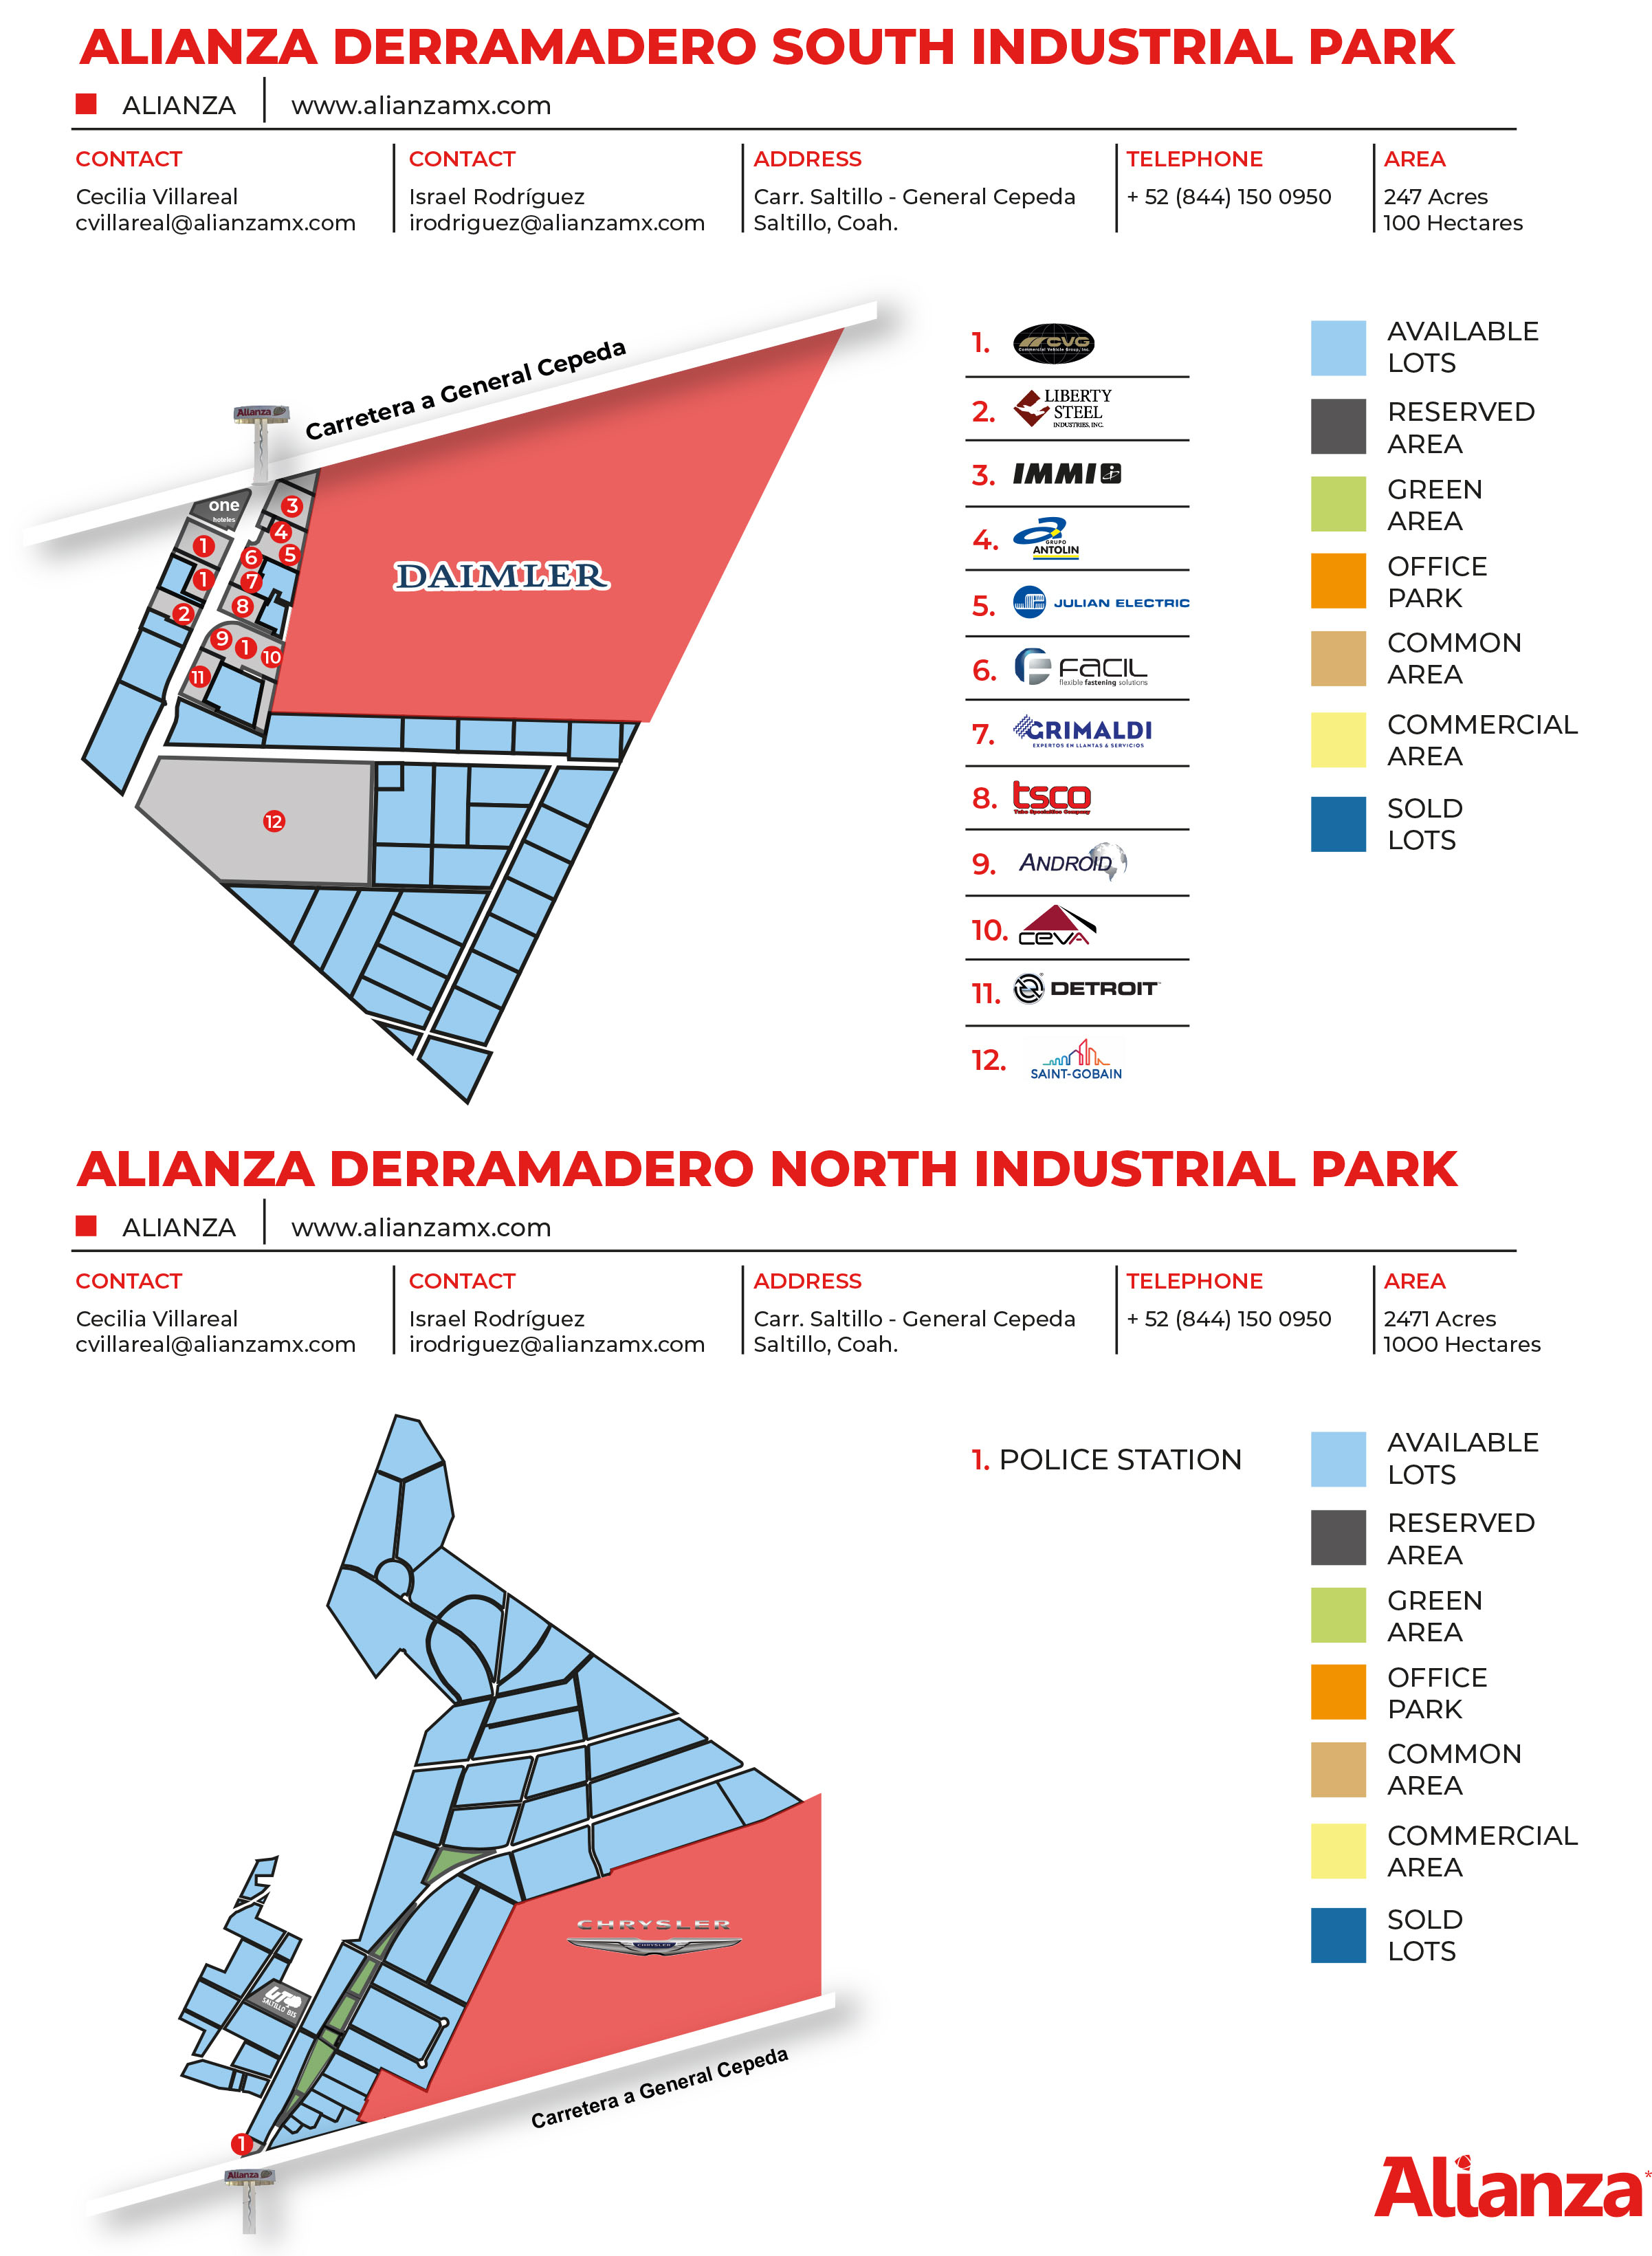 La ubicación geográfica de Derramadero es una ventaja logística para las empresas debido a la distancia hacia la frontera: Piedras Negras, Nuevo Laredo y Reynosa